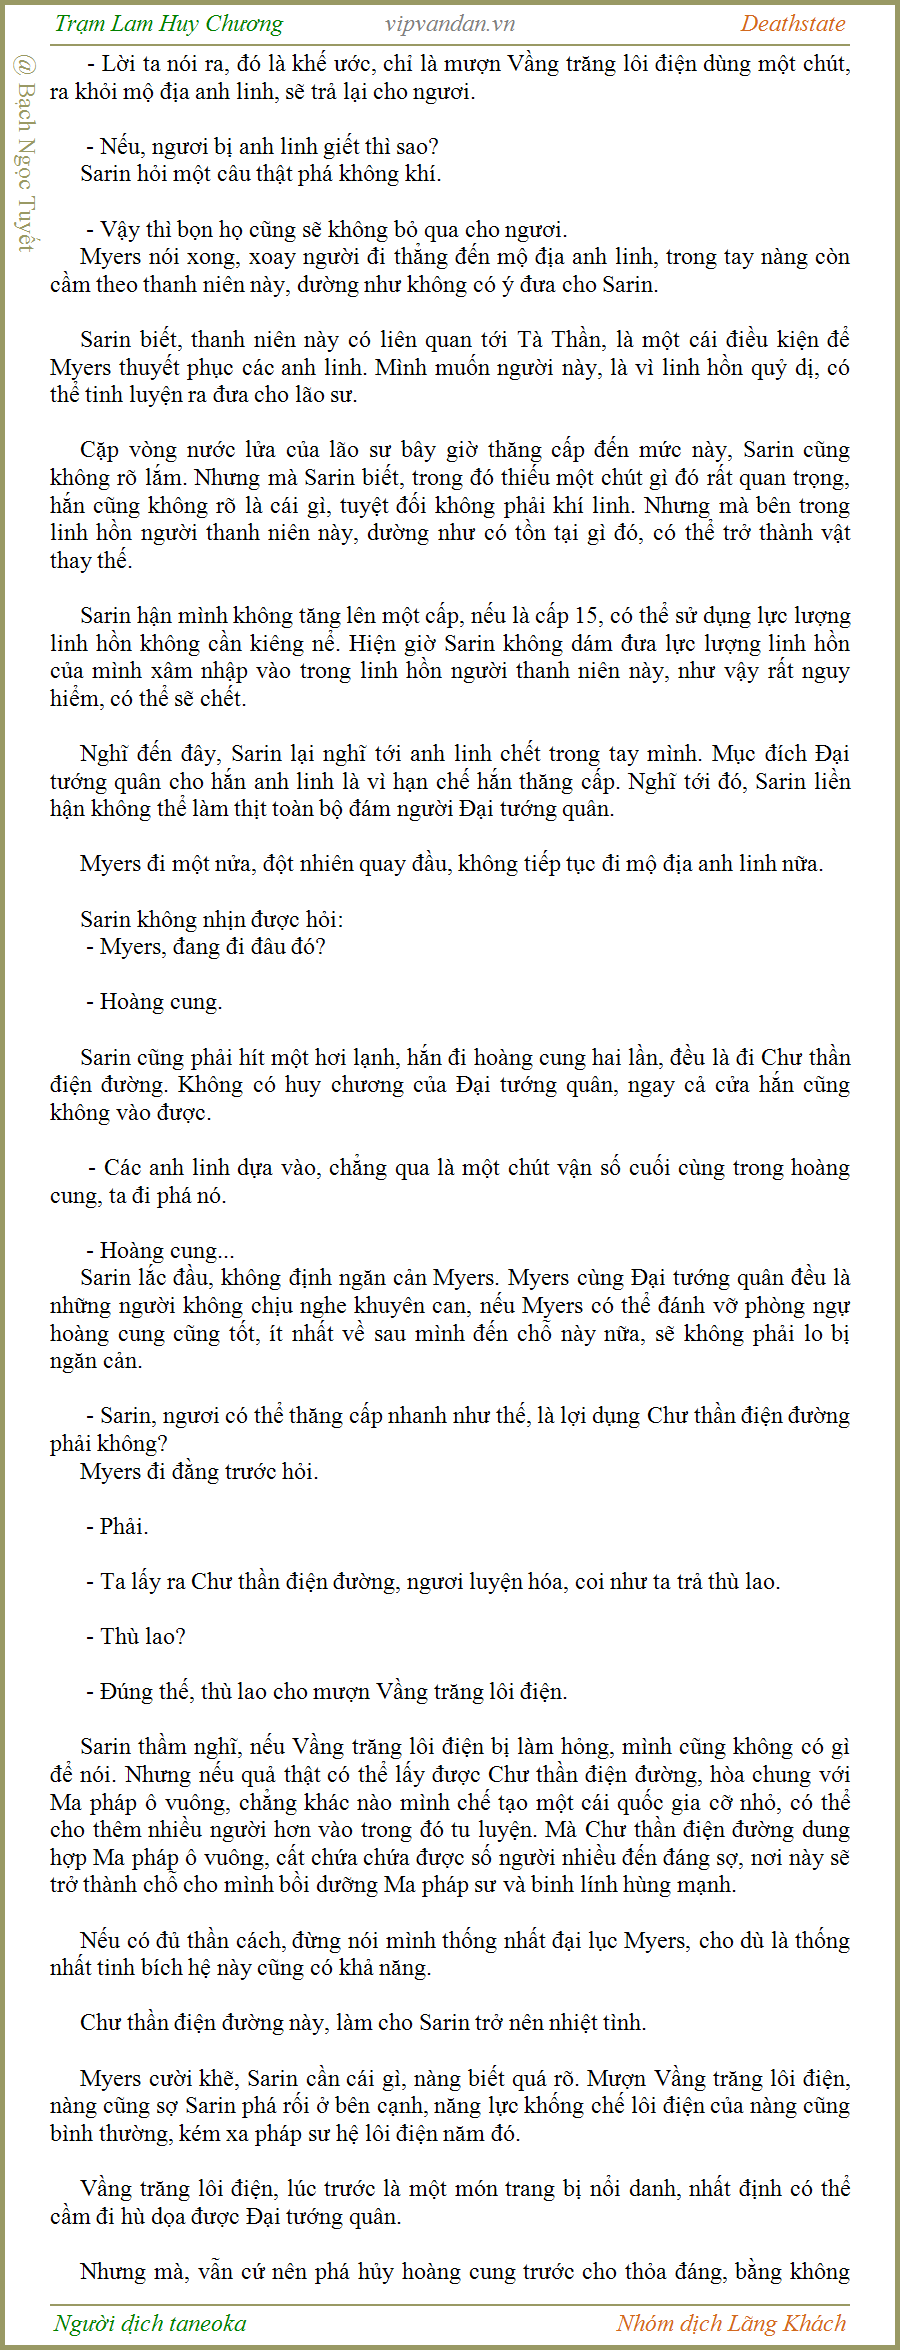 Trạm Lam Huy Chương - Deathstate - FUll - (tháo zen Quyển 3 - Chương 752)